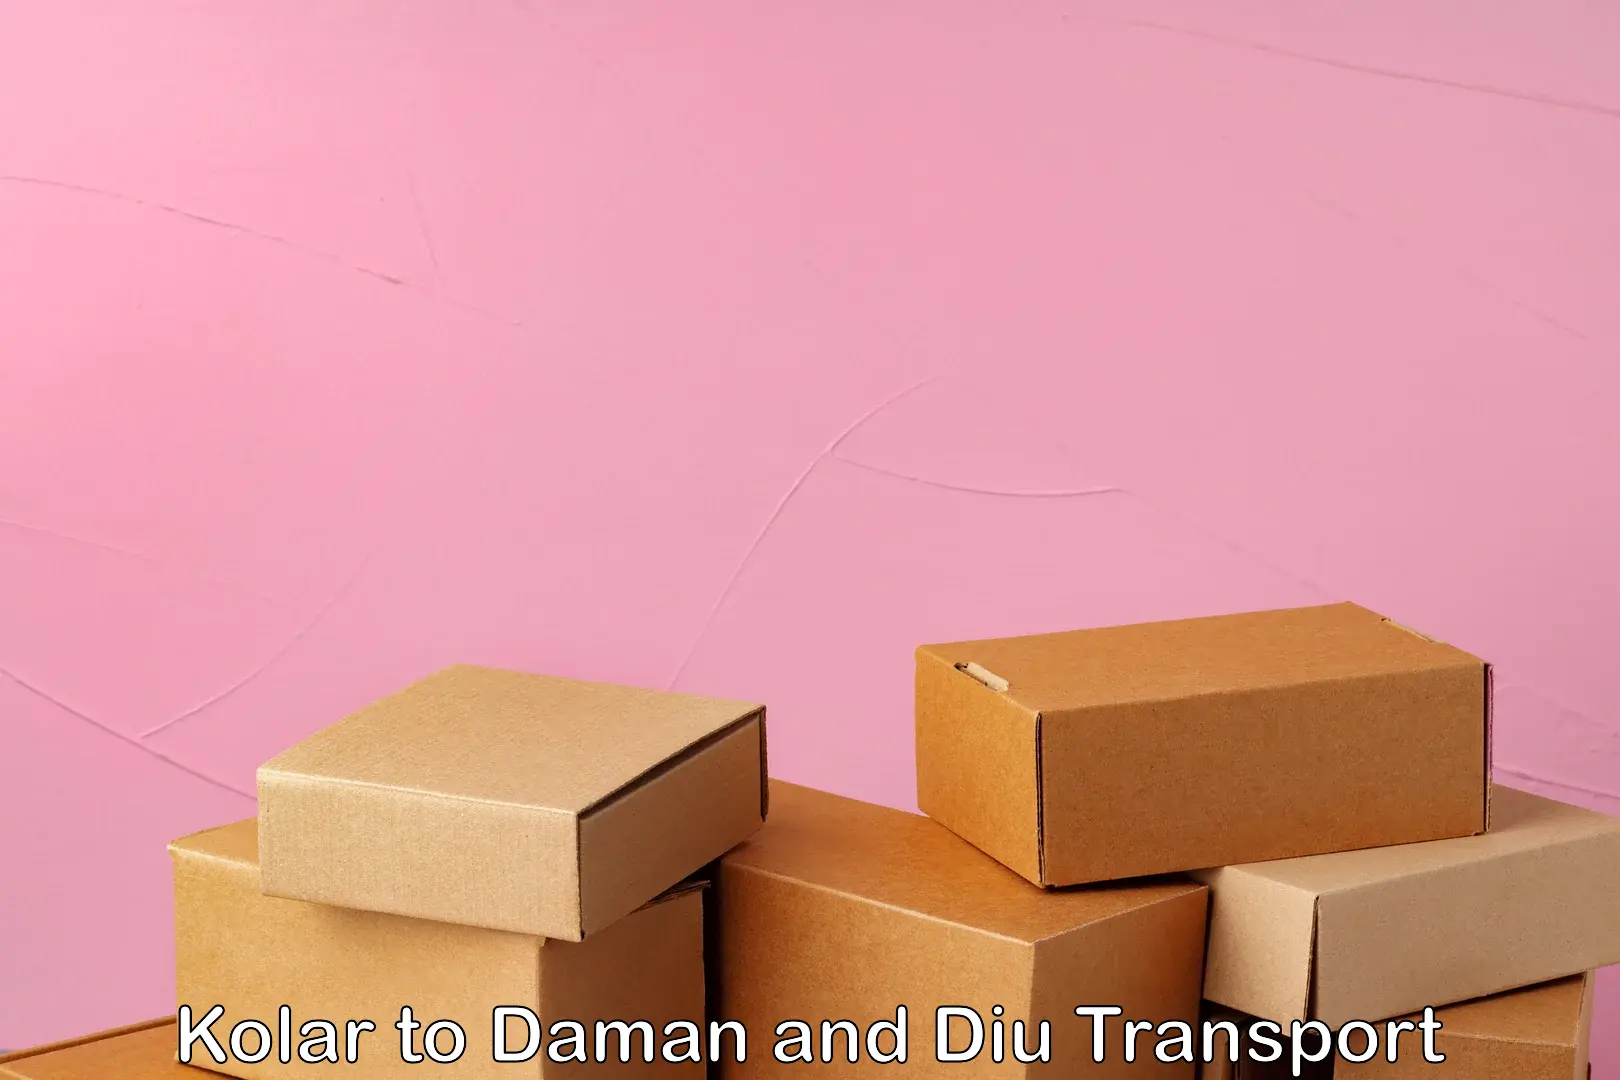 Air freight transport services Kolar to Daman and Diu